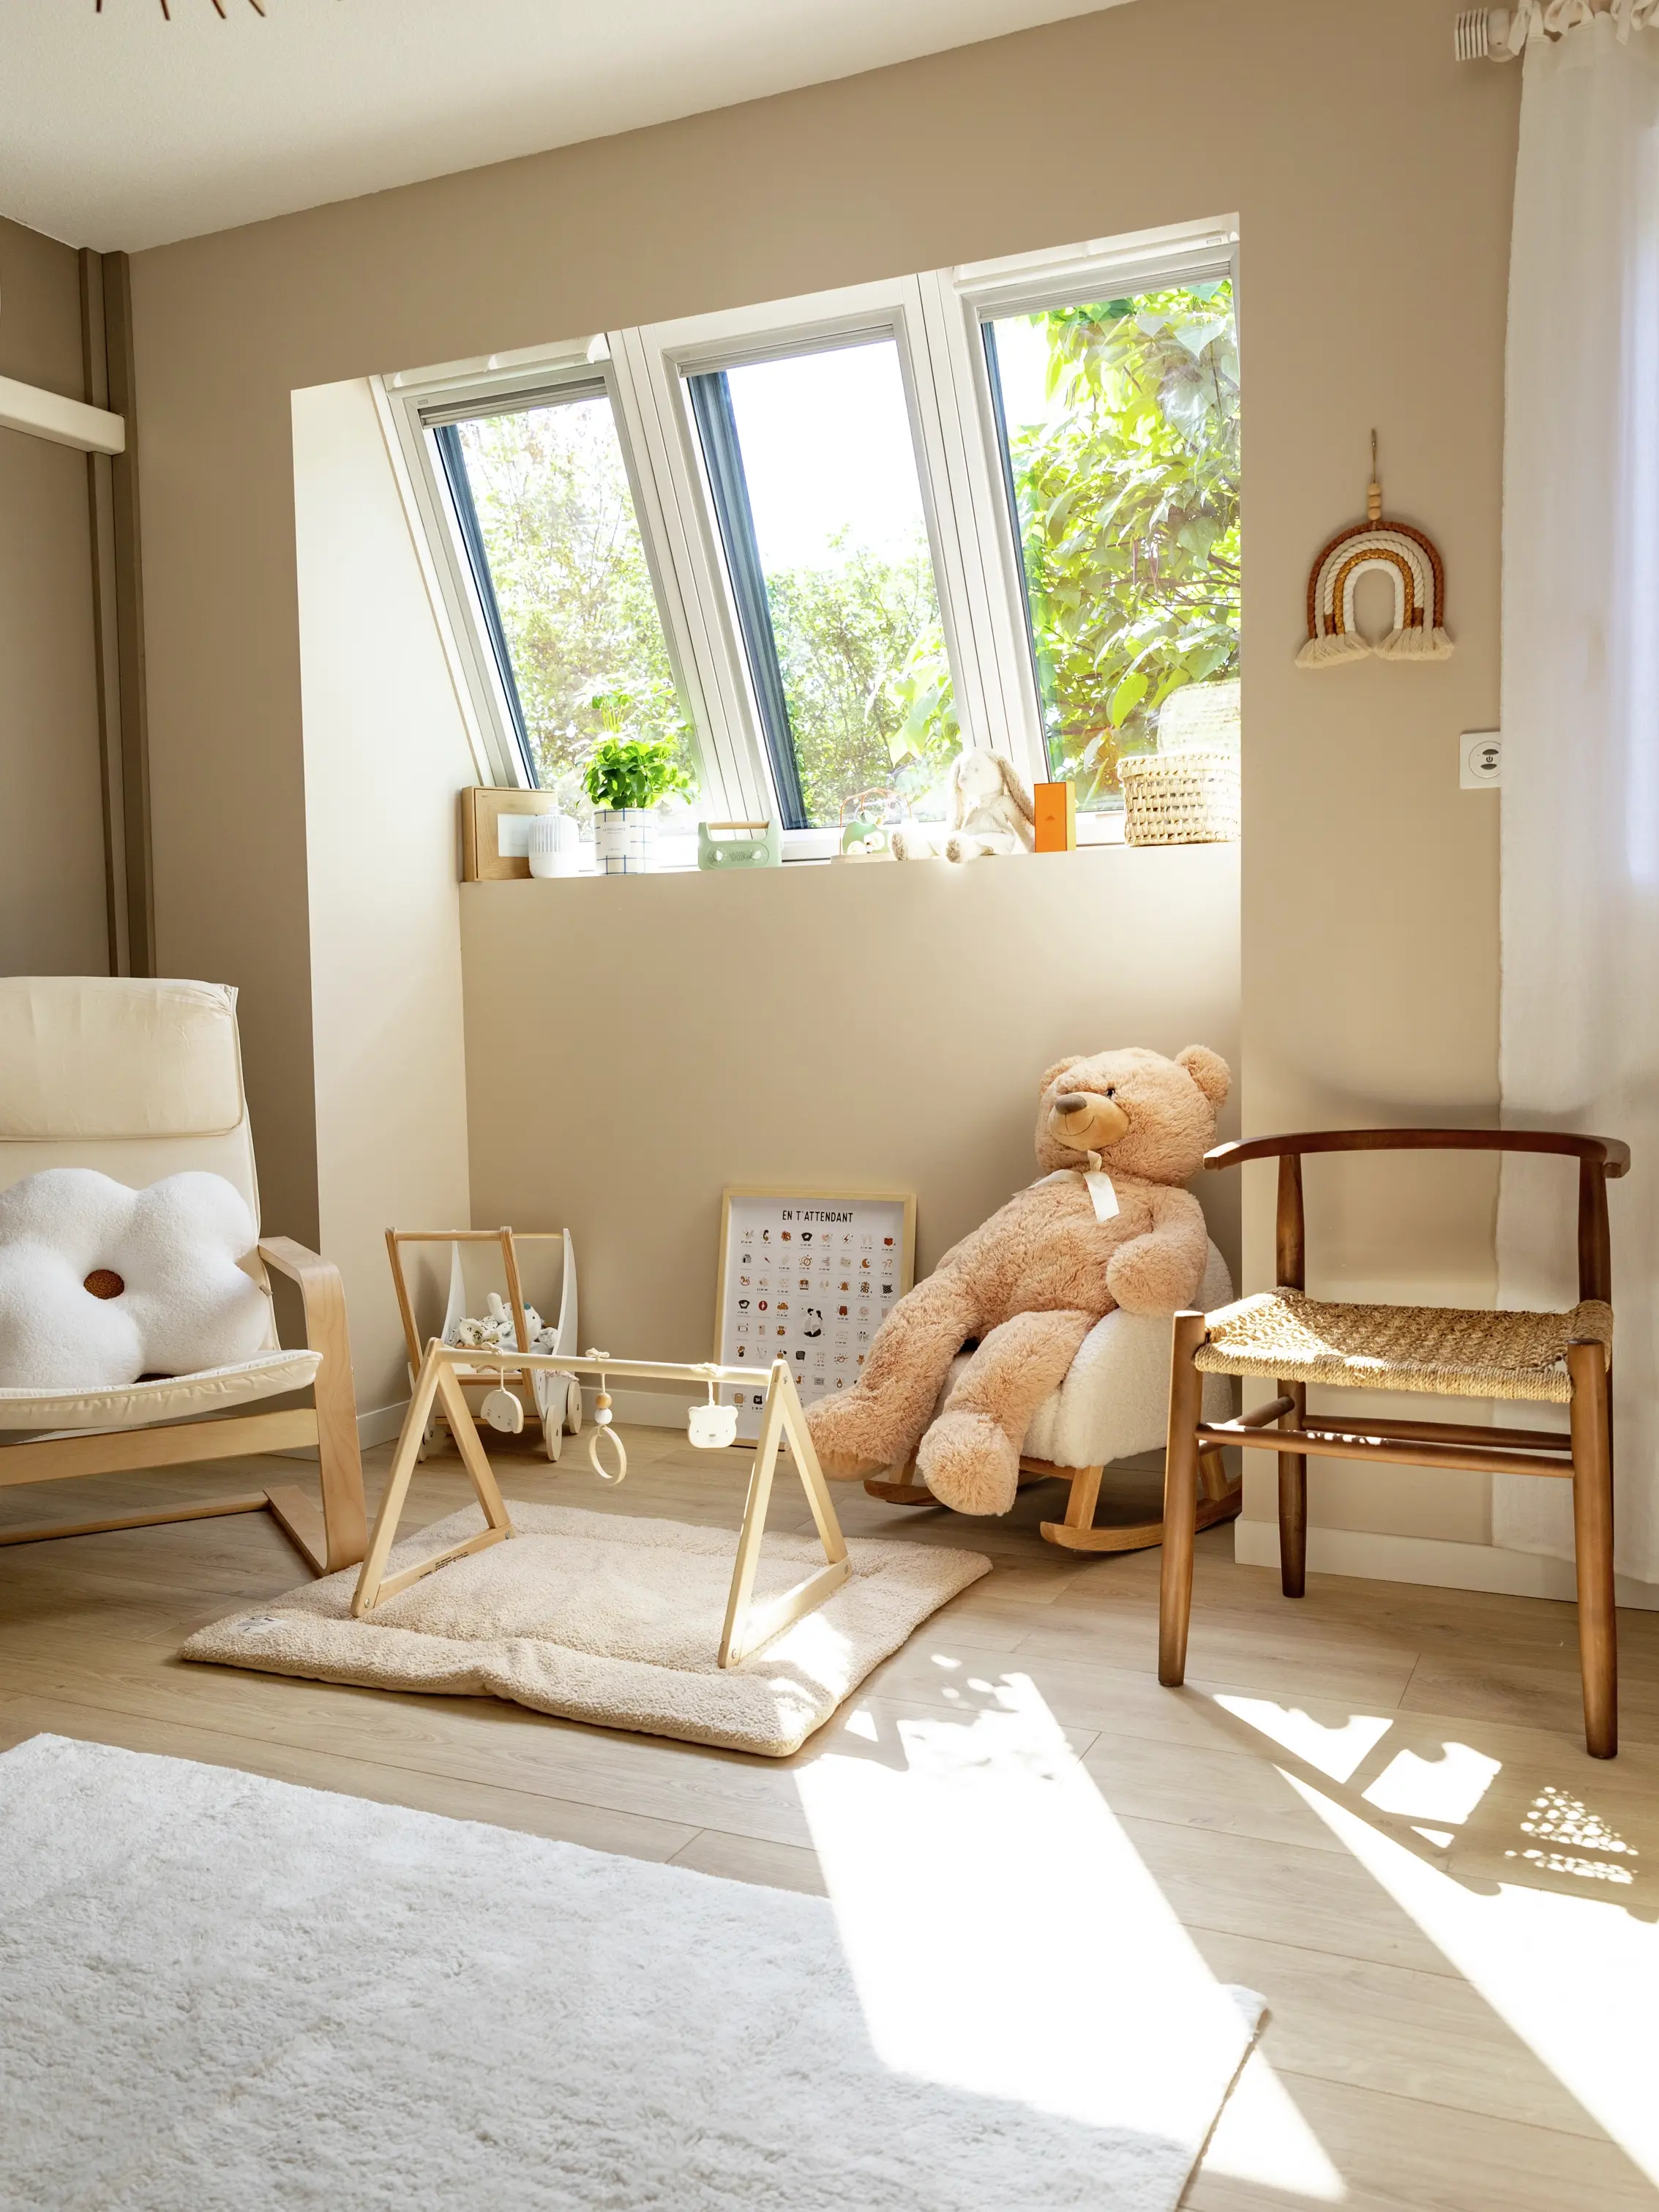 Chambre d'enfants lumineuse avec des fenêtres VELUX et des jouets en bois